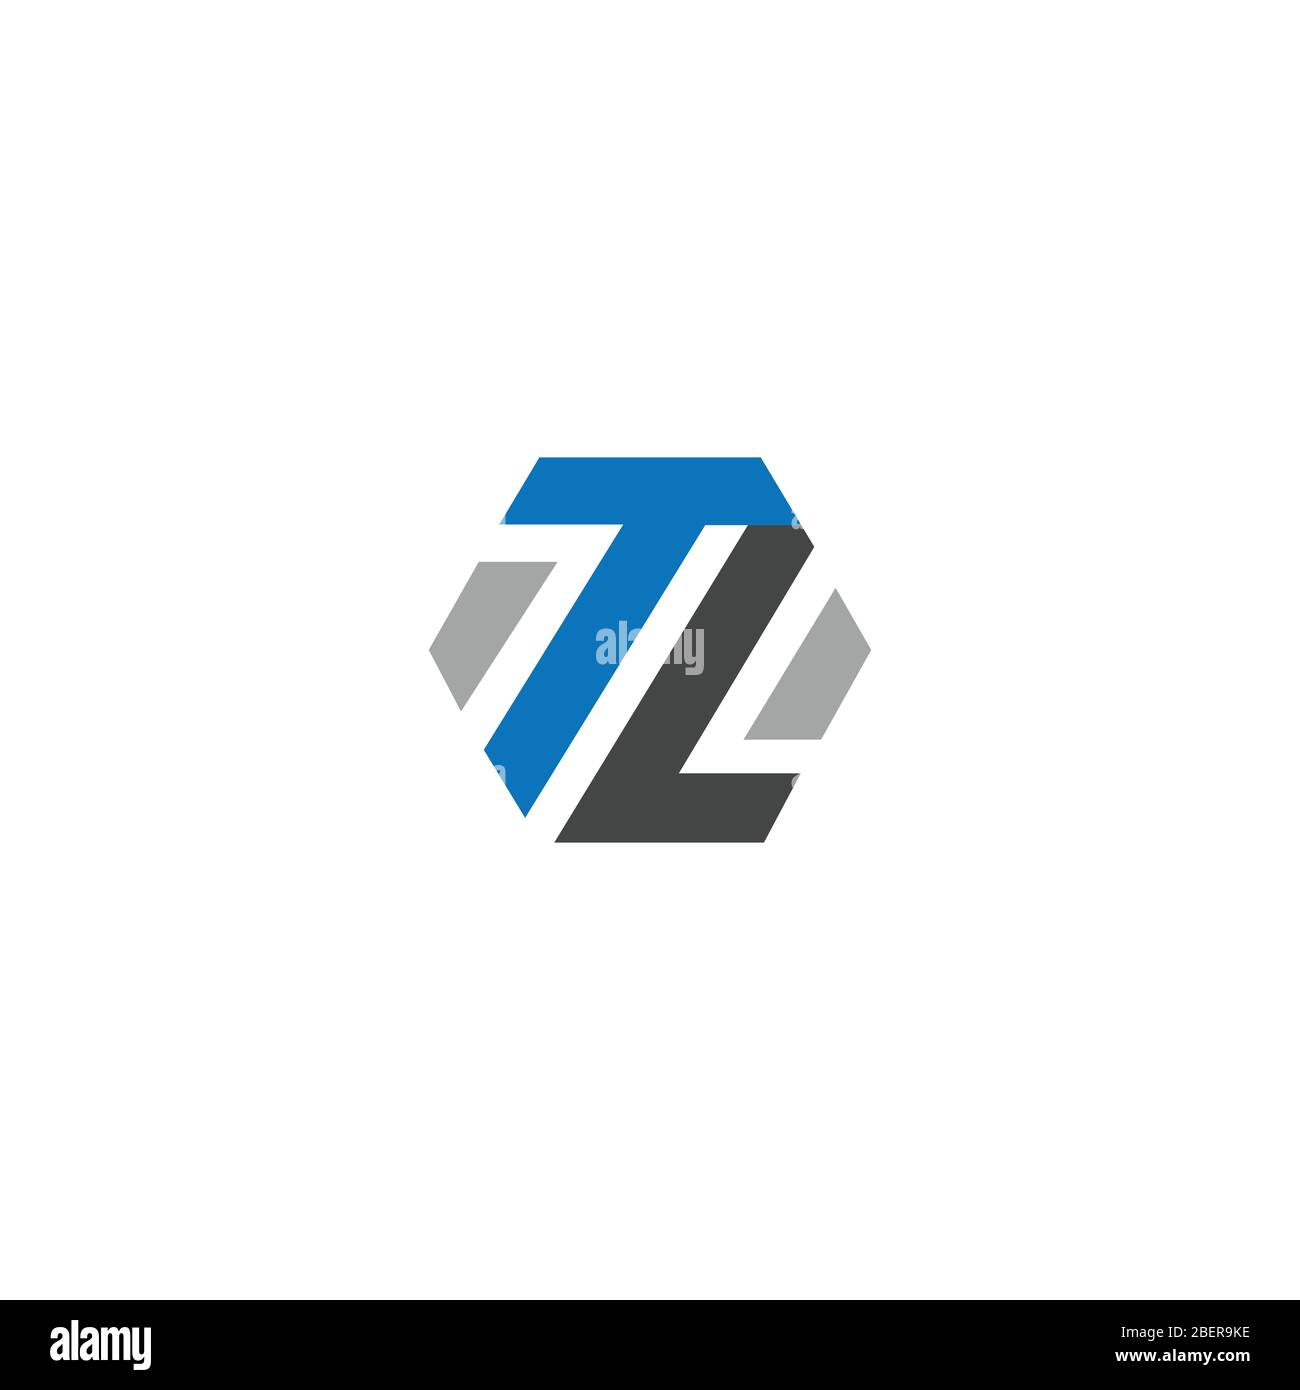 Niet verwacht onderwijzen boete Tl logo Cut Out Stock Images & Pictures - Alamy